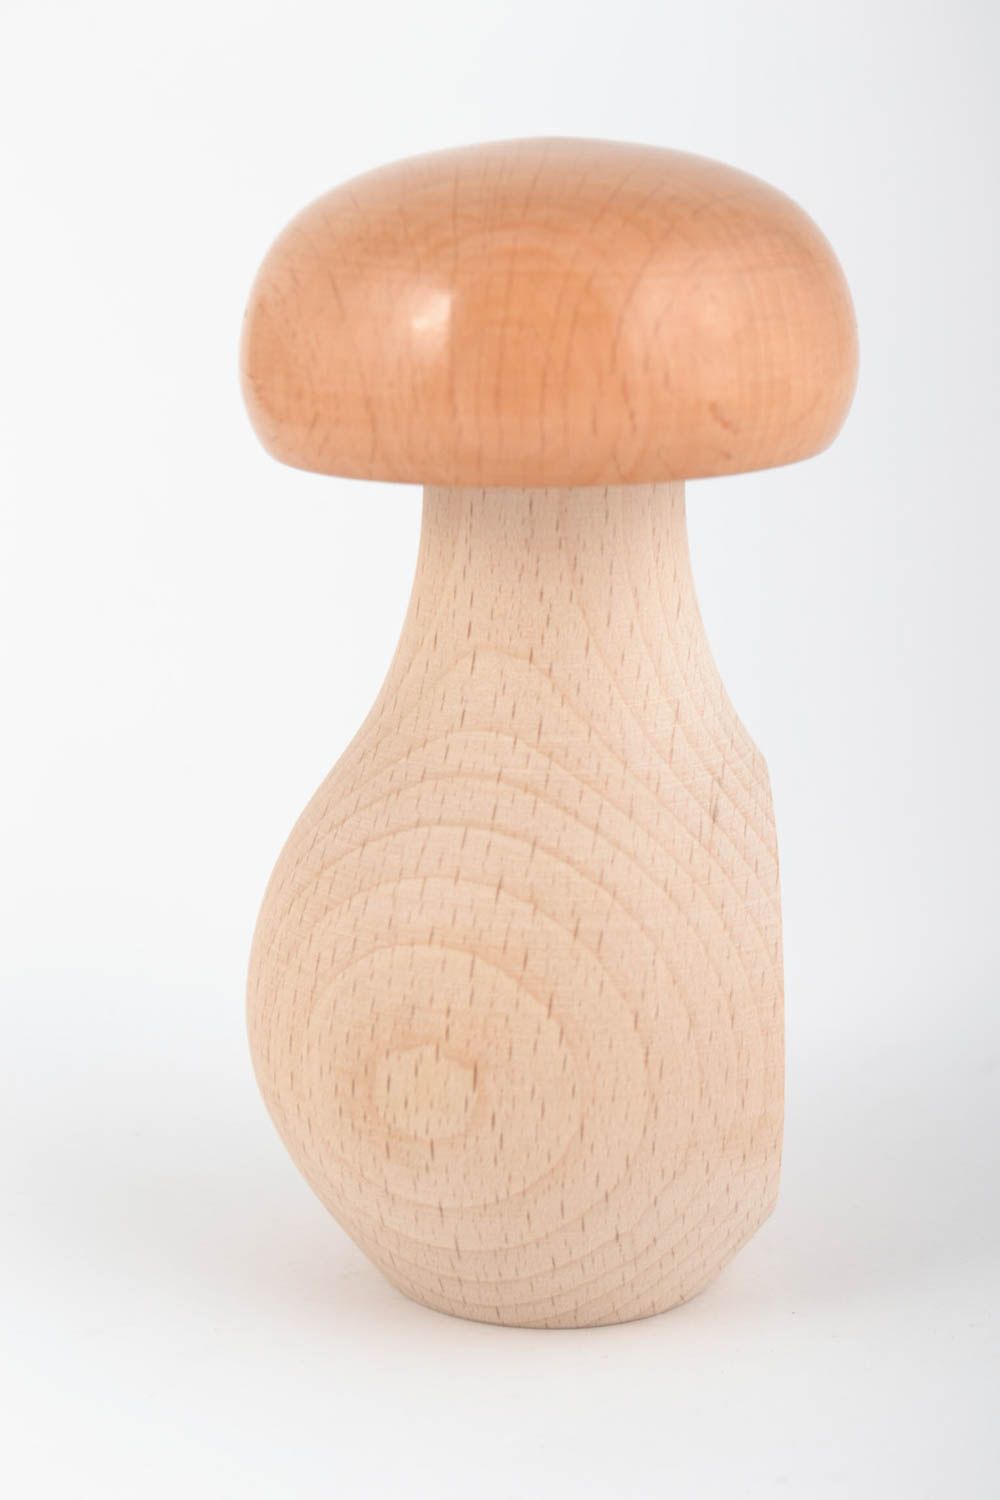 Handmade Nussknacker aus Holz in Form vom Pilz aus natürlichem Material schön foto 3